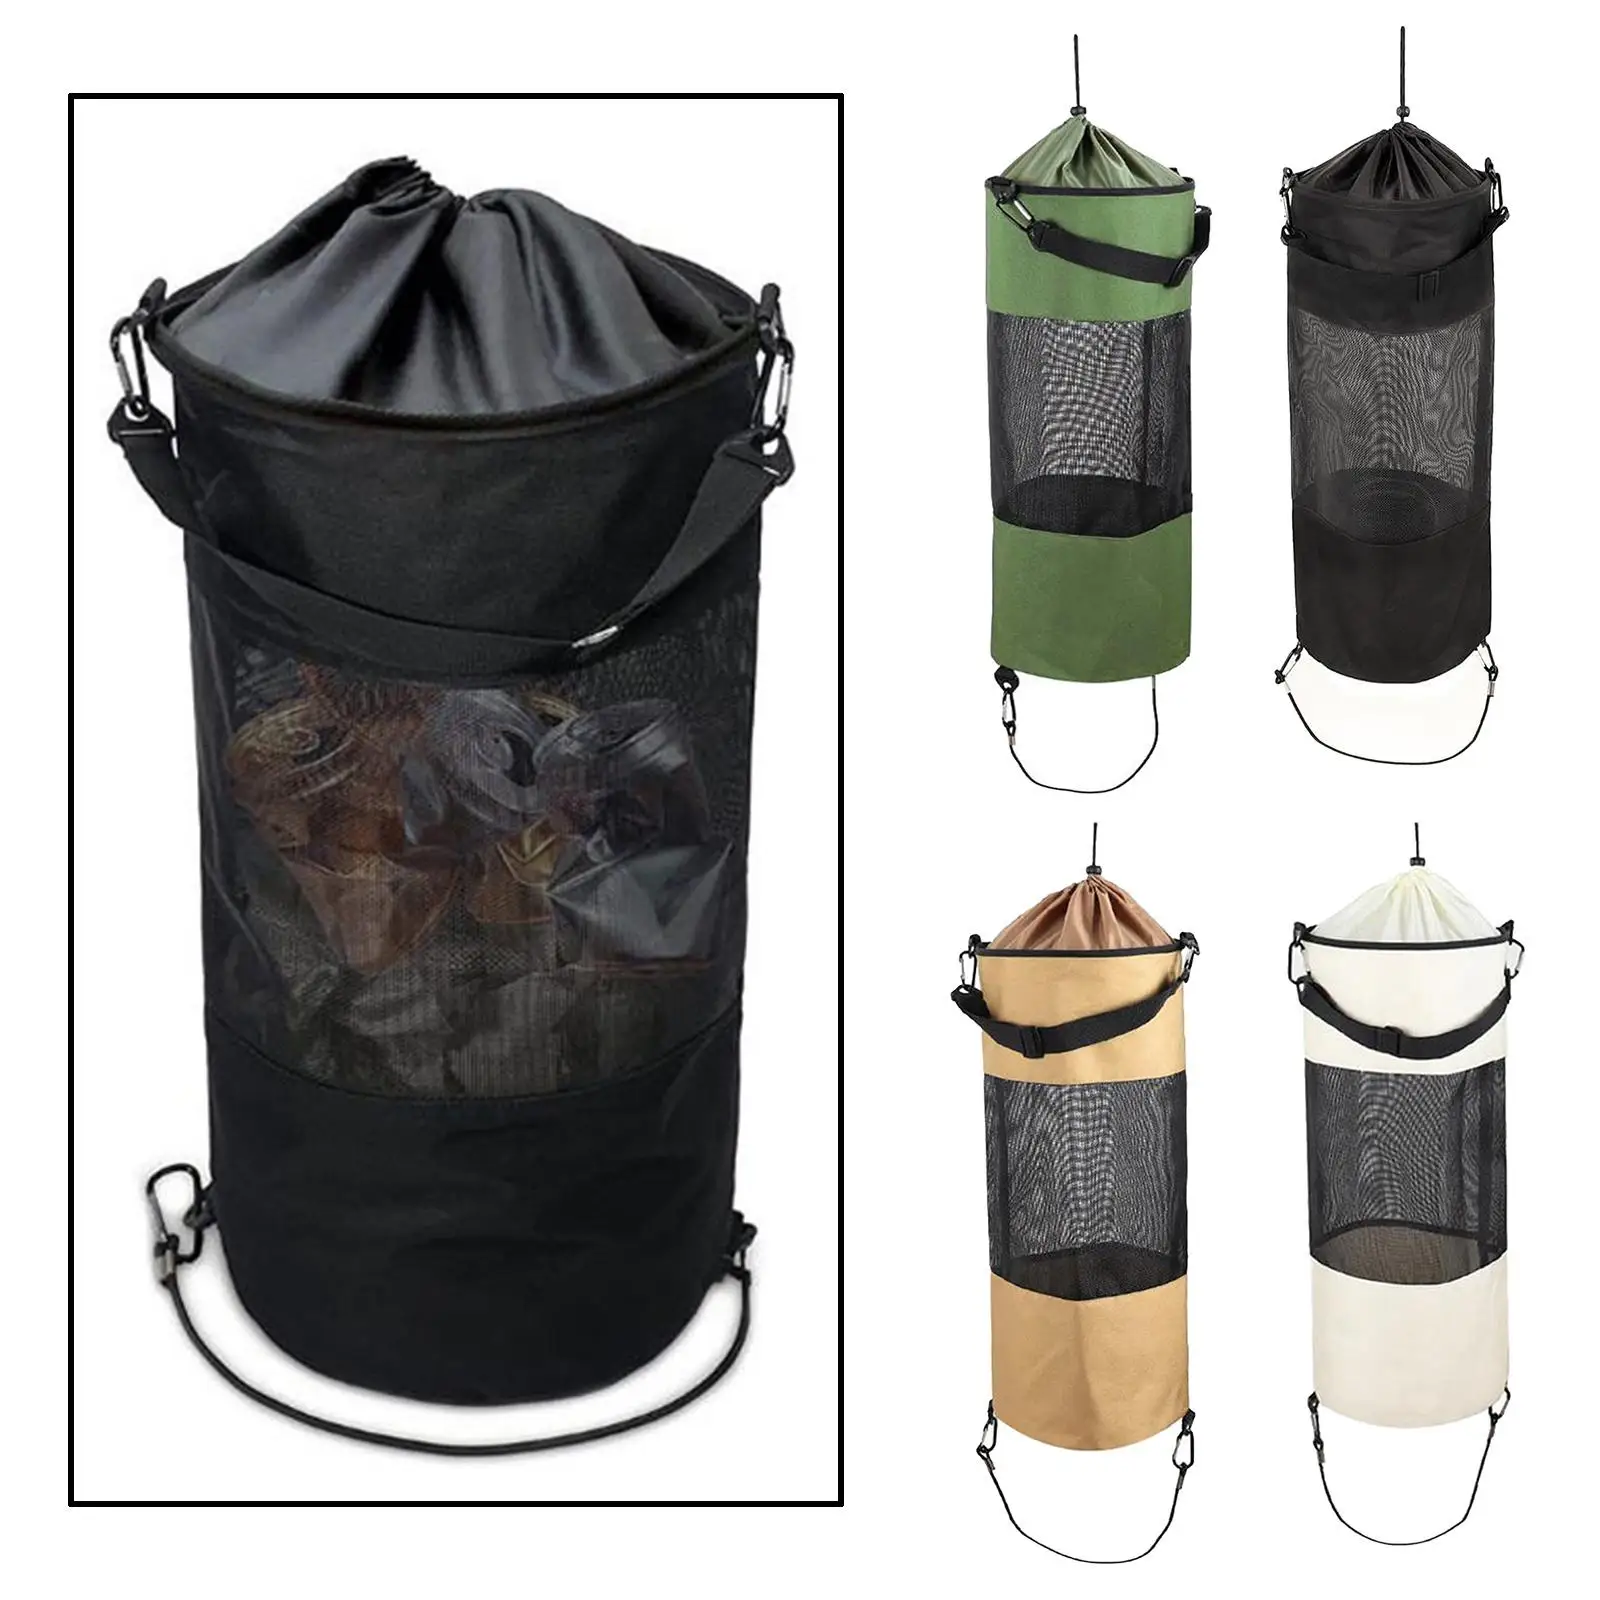 Portable Bag Large Mesh Garbage Bags Kayak Camper Bin Bag Holder